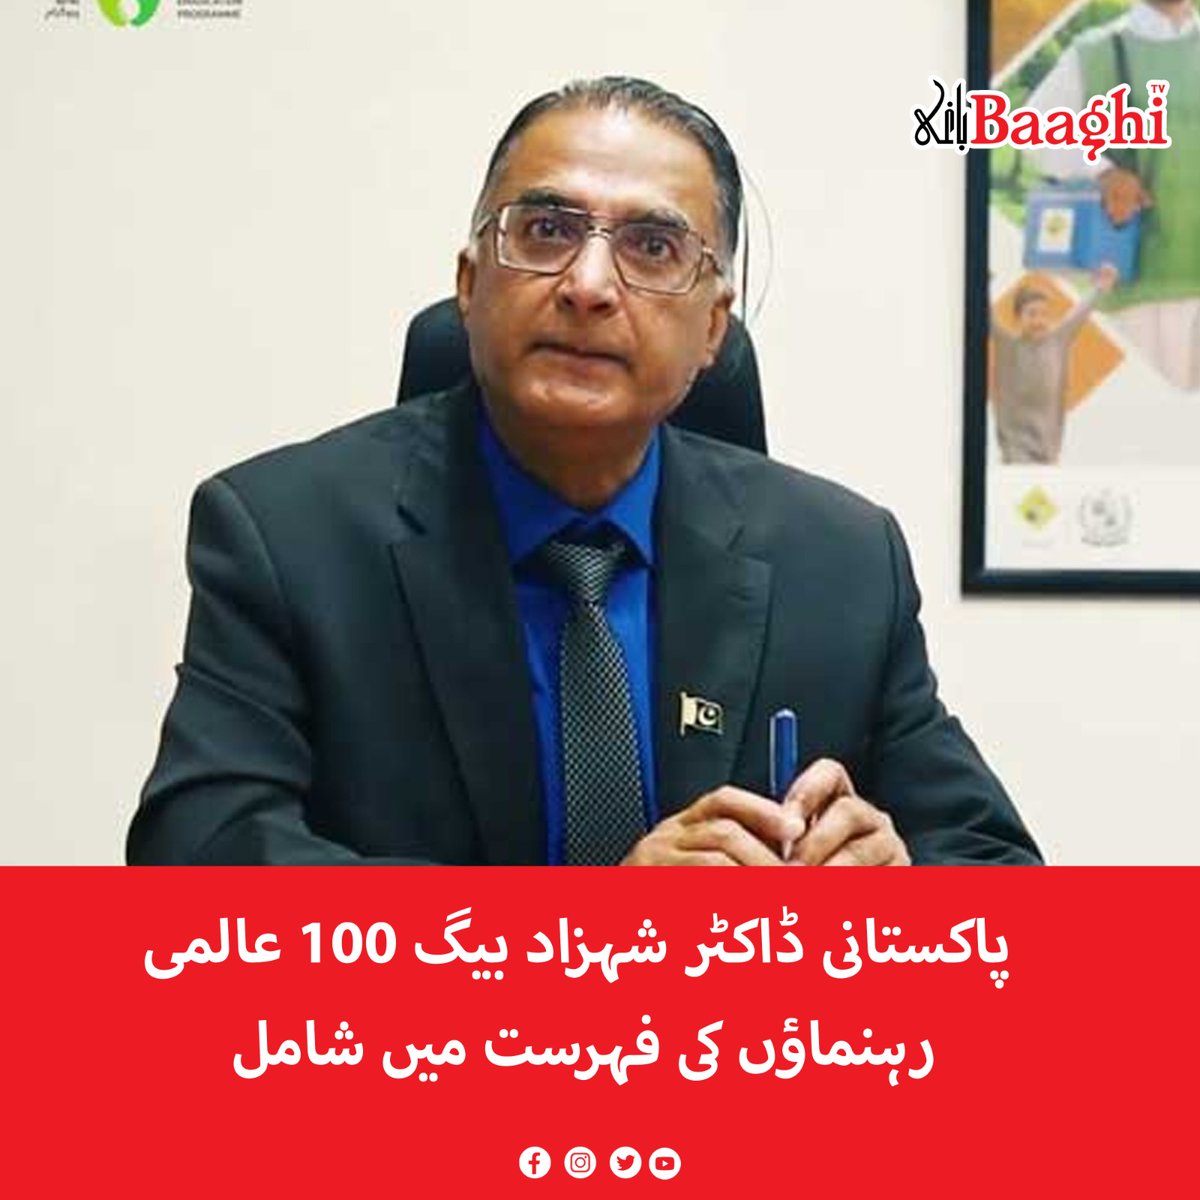 پاکستانی ڈاکٹر شہزاد بیگ 100 عالمی رہنماؤں کی فہرست میں شامل

baaghitv.com/pakistani-dr-s…

#BaaghiTV #Pakistan #Pakistani #DrShahzadBaig #Included #List #100world #Leaders